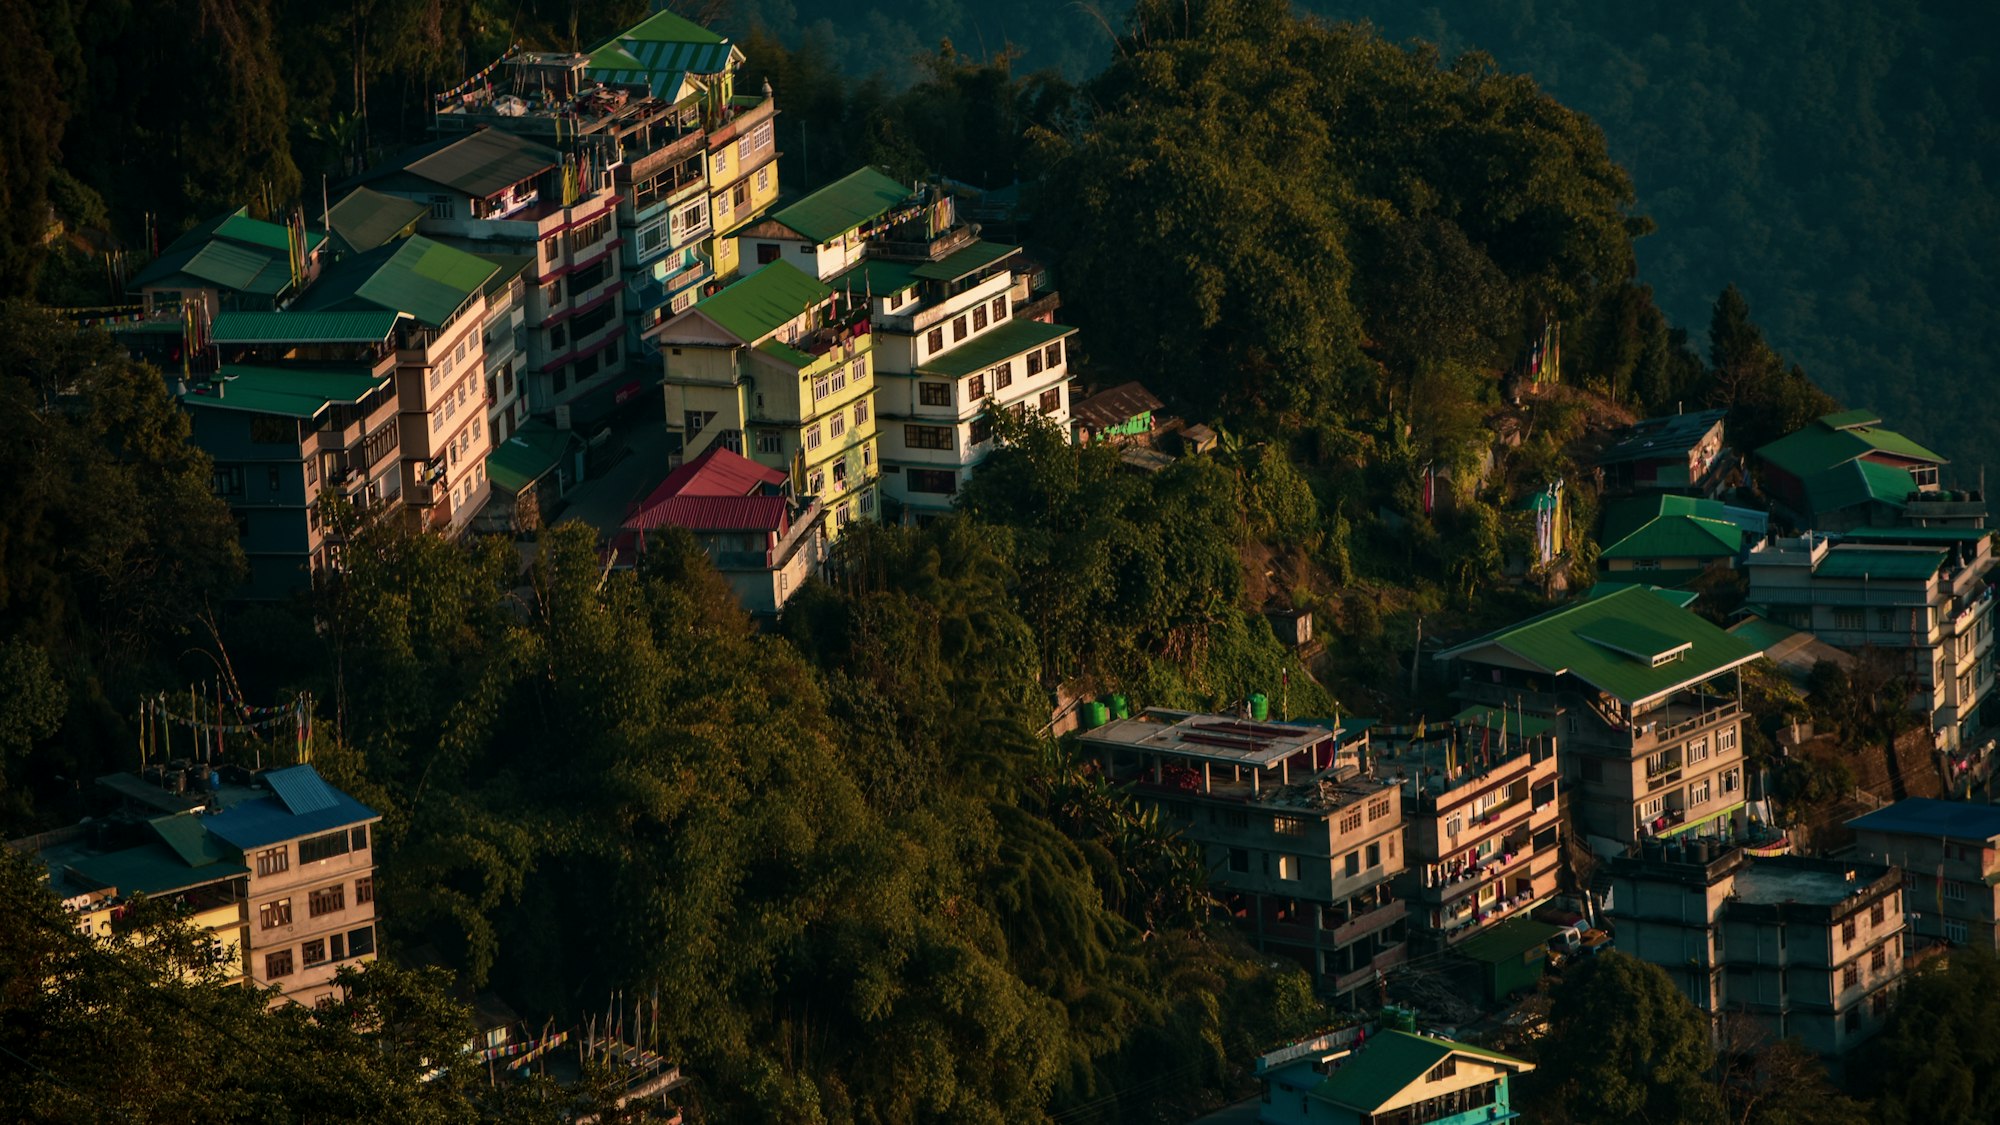 A neighbourhood in the outskirts of Gangtok City, Sikkim.